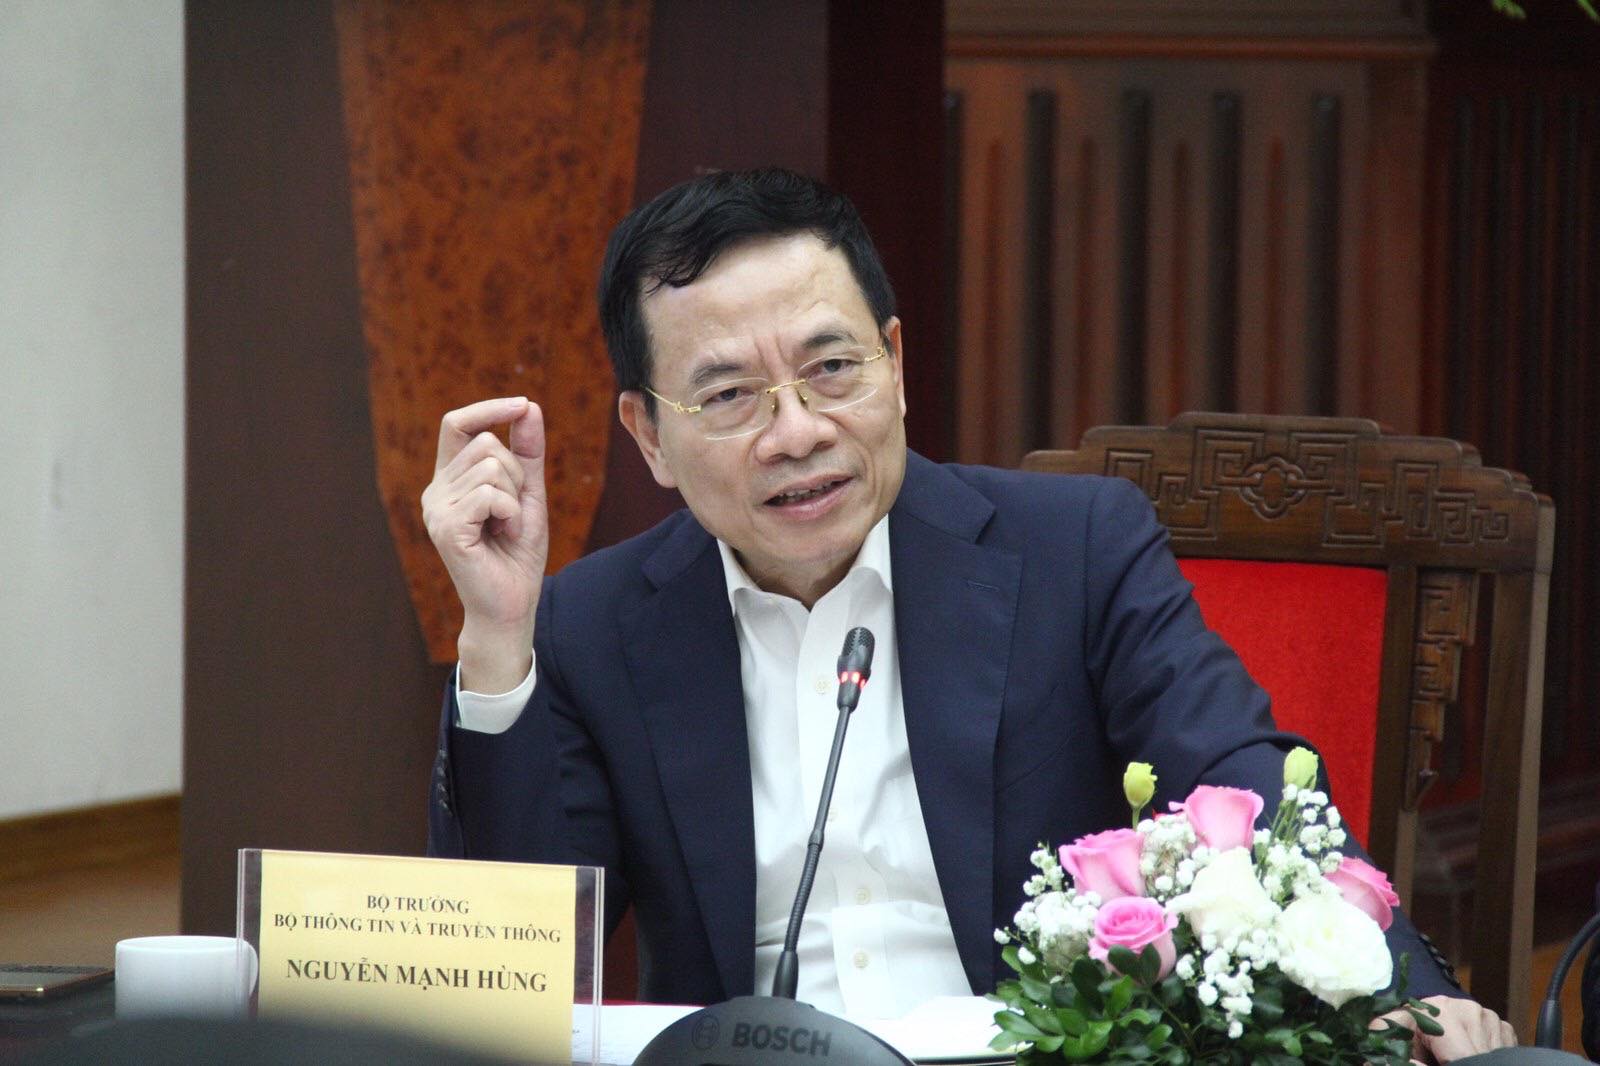 Phát biểu của Bộ trưởng Nguyễn Mạnh Hùng tại Hội nghị Chuyển đổi số ngành Giao thông Vận tải